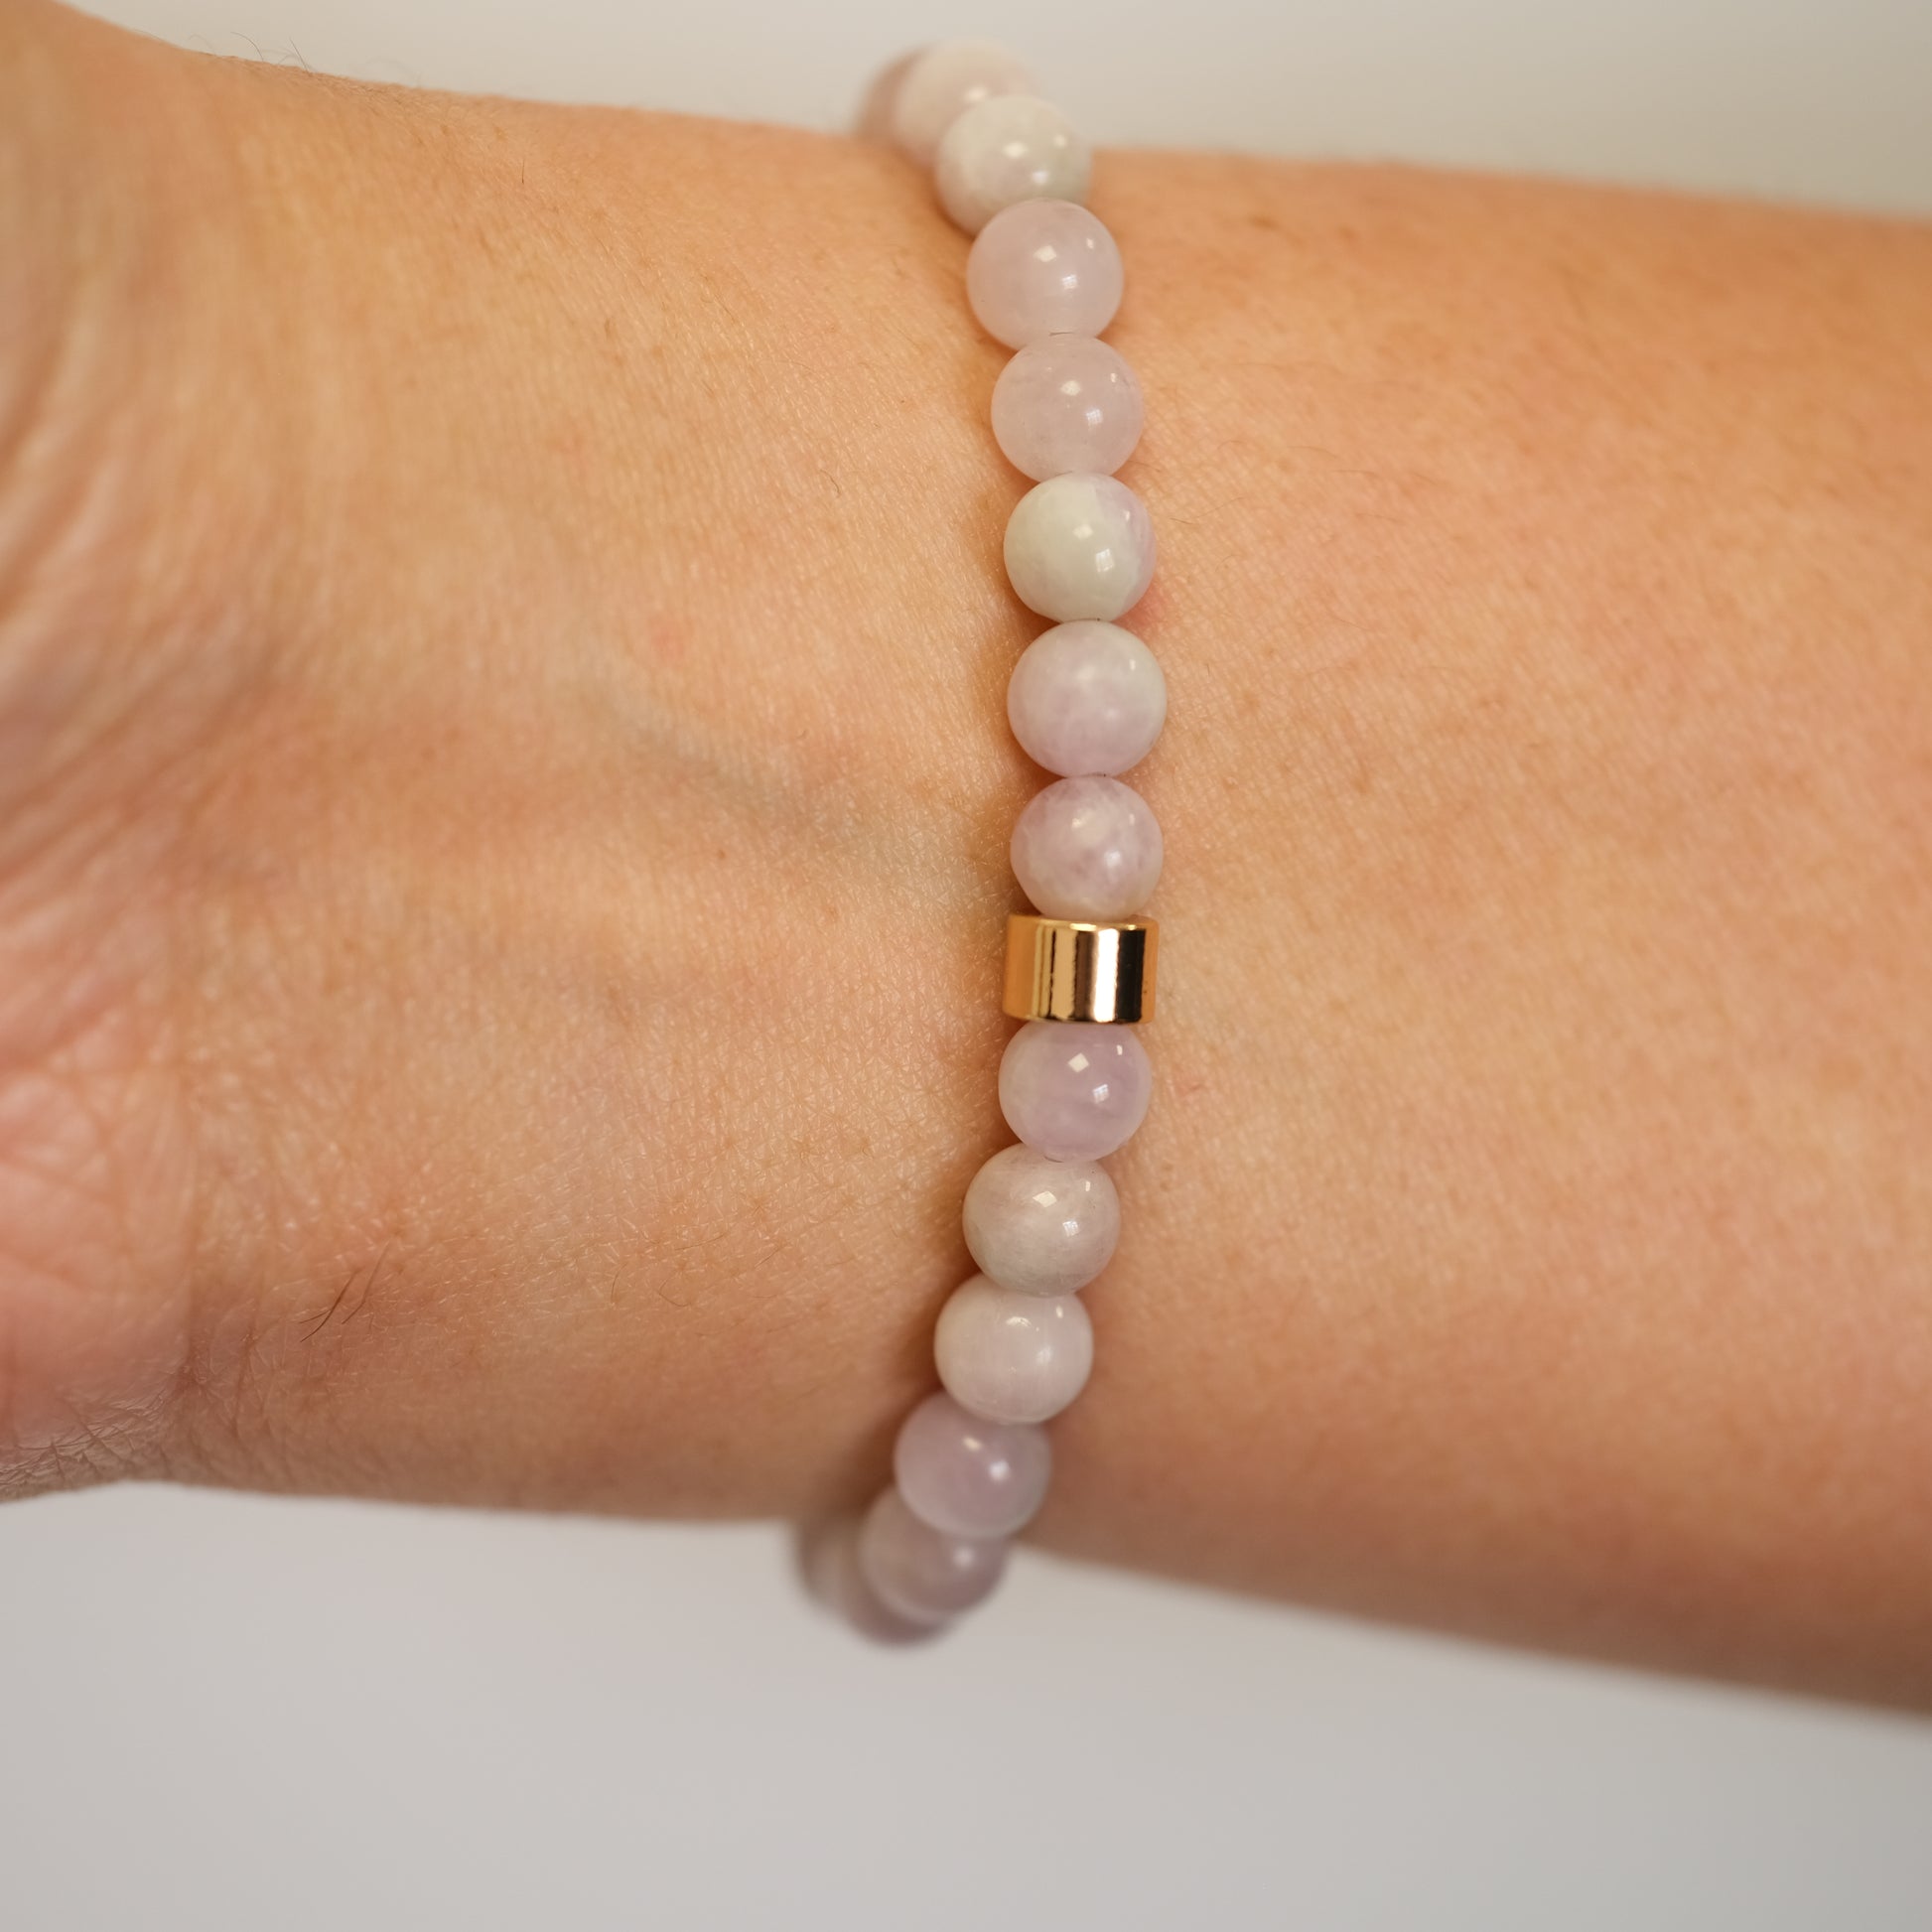 A 6mm Kunzite bracelet in 6mm beads worn on a model's wrist from behind